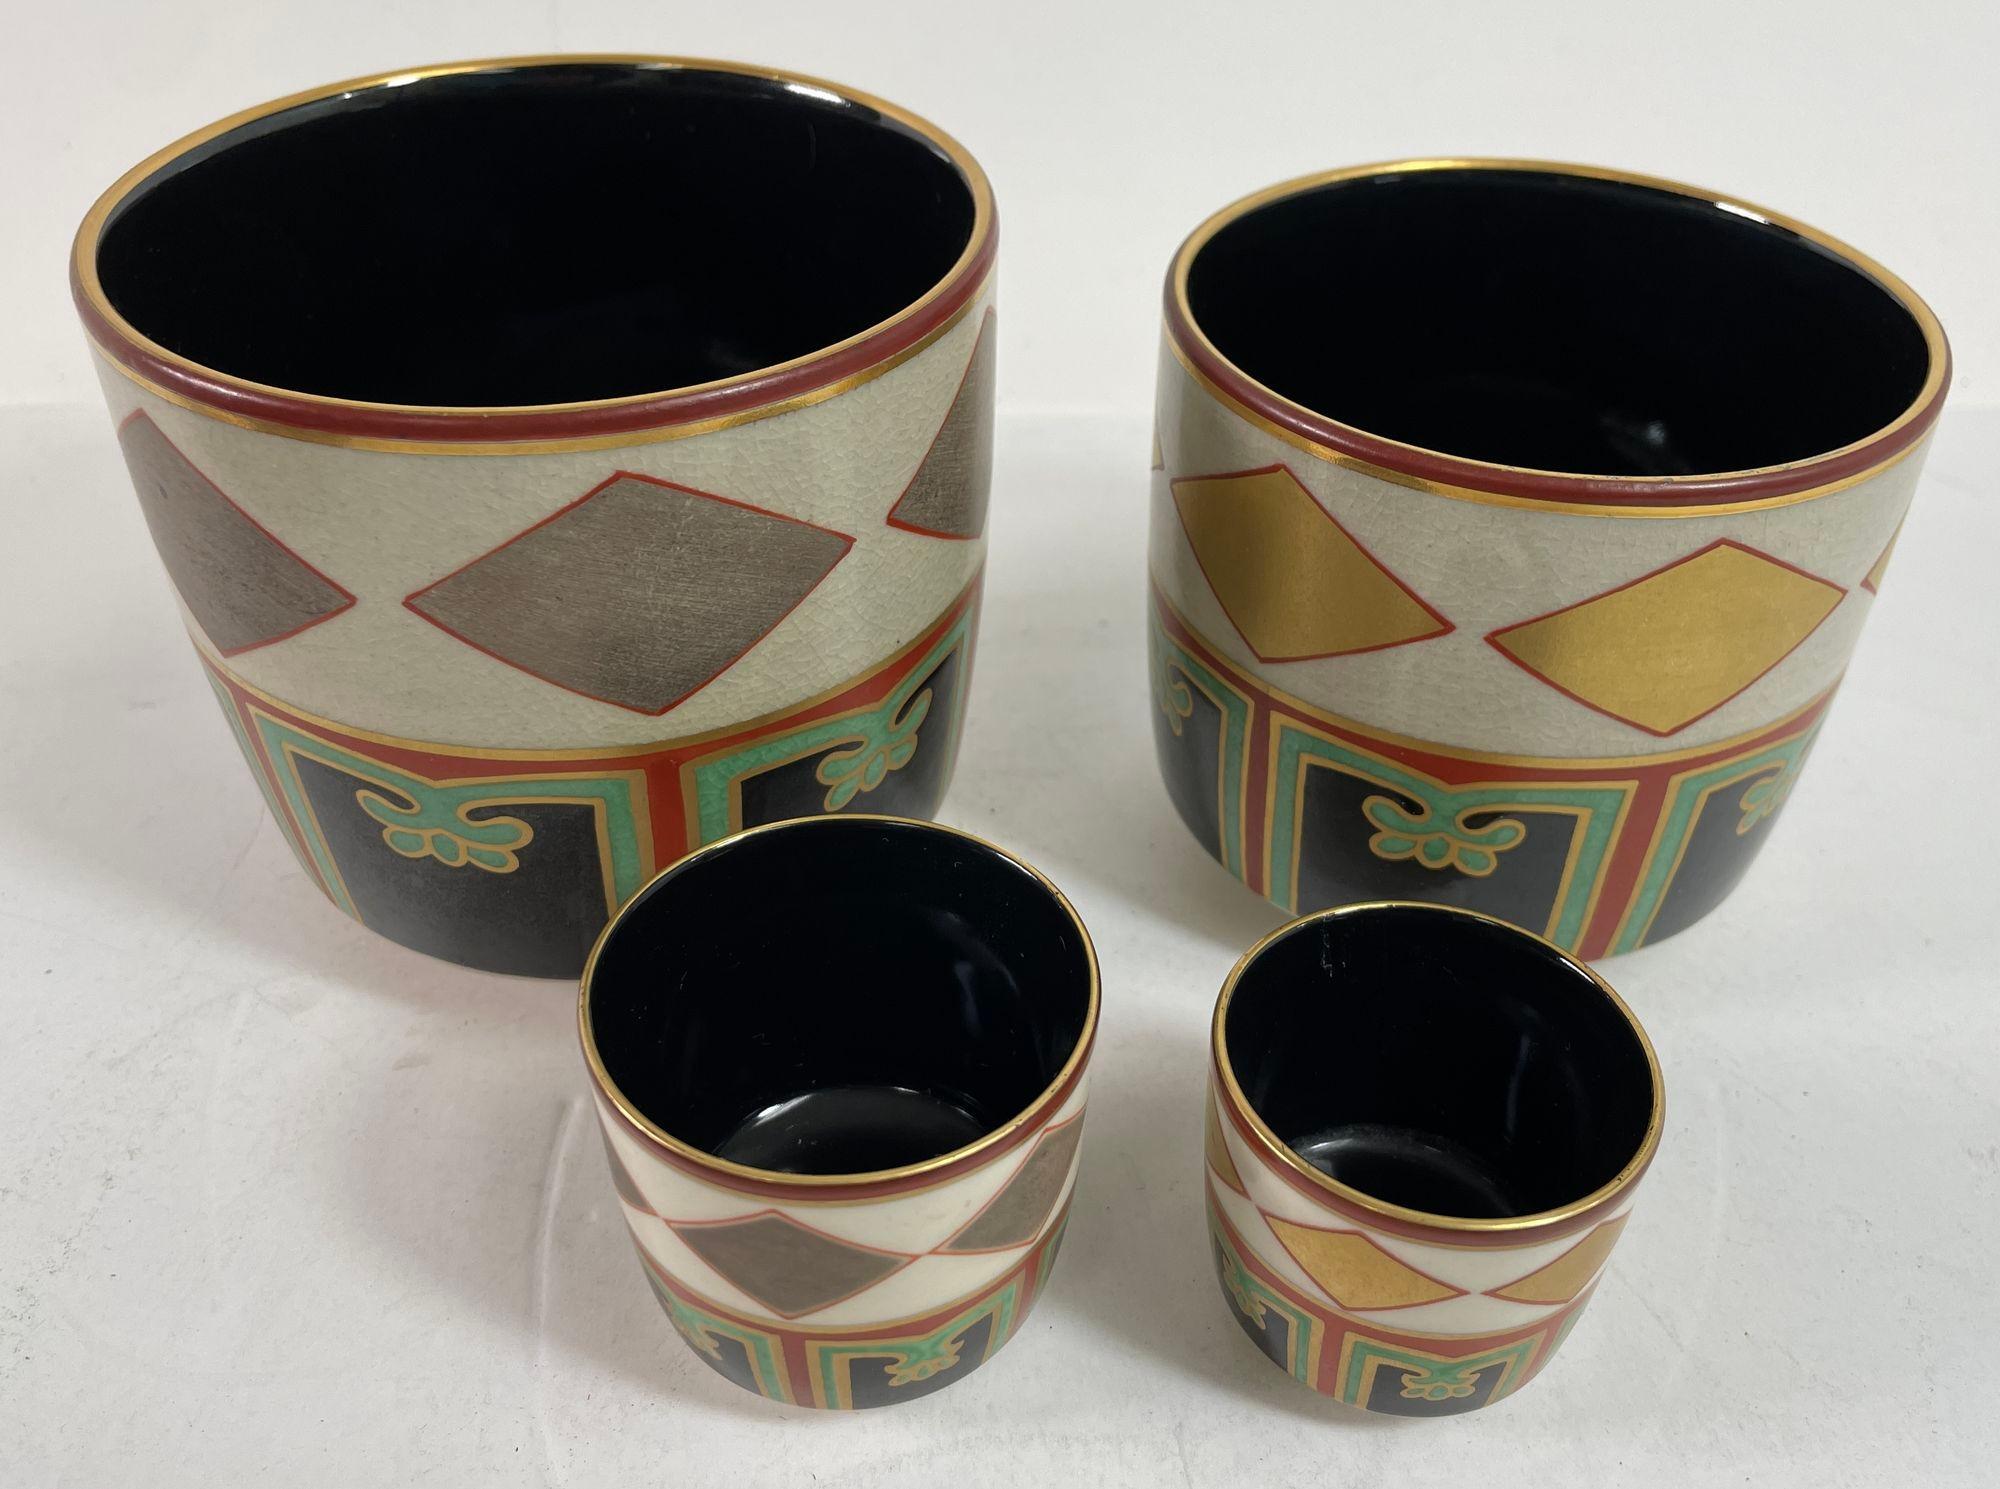 Ensemble de bols et plateaux à thé Kuniyaki d'après Nonomura Ninsei Japon, Vintage.
Set de bols à thé Kuniyaki, d'après Ninsei.
Bols et plateaux à thé Kuniyaki Japon en porcelaine noire à l'intérieur et décorée d'or, de rouge, de vert et